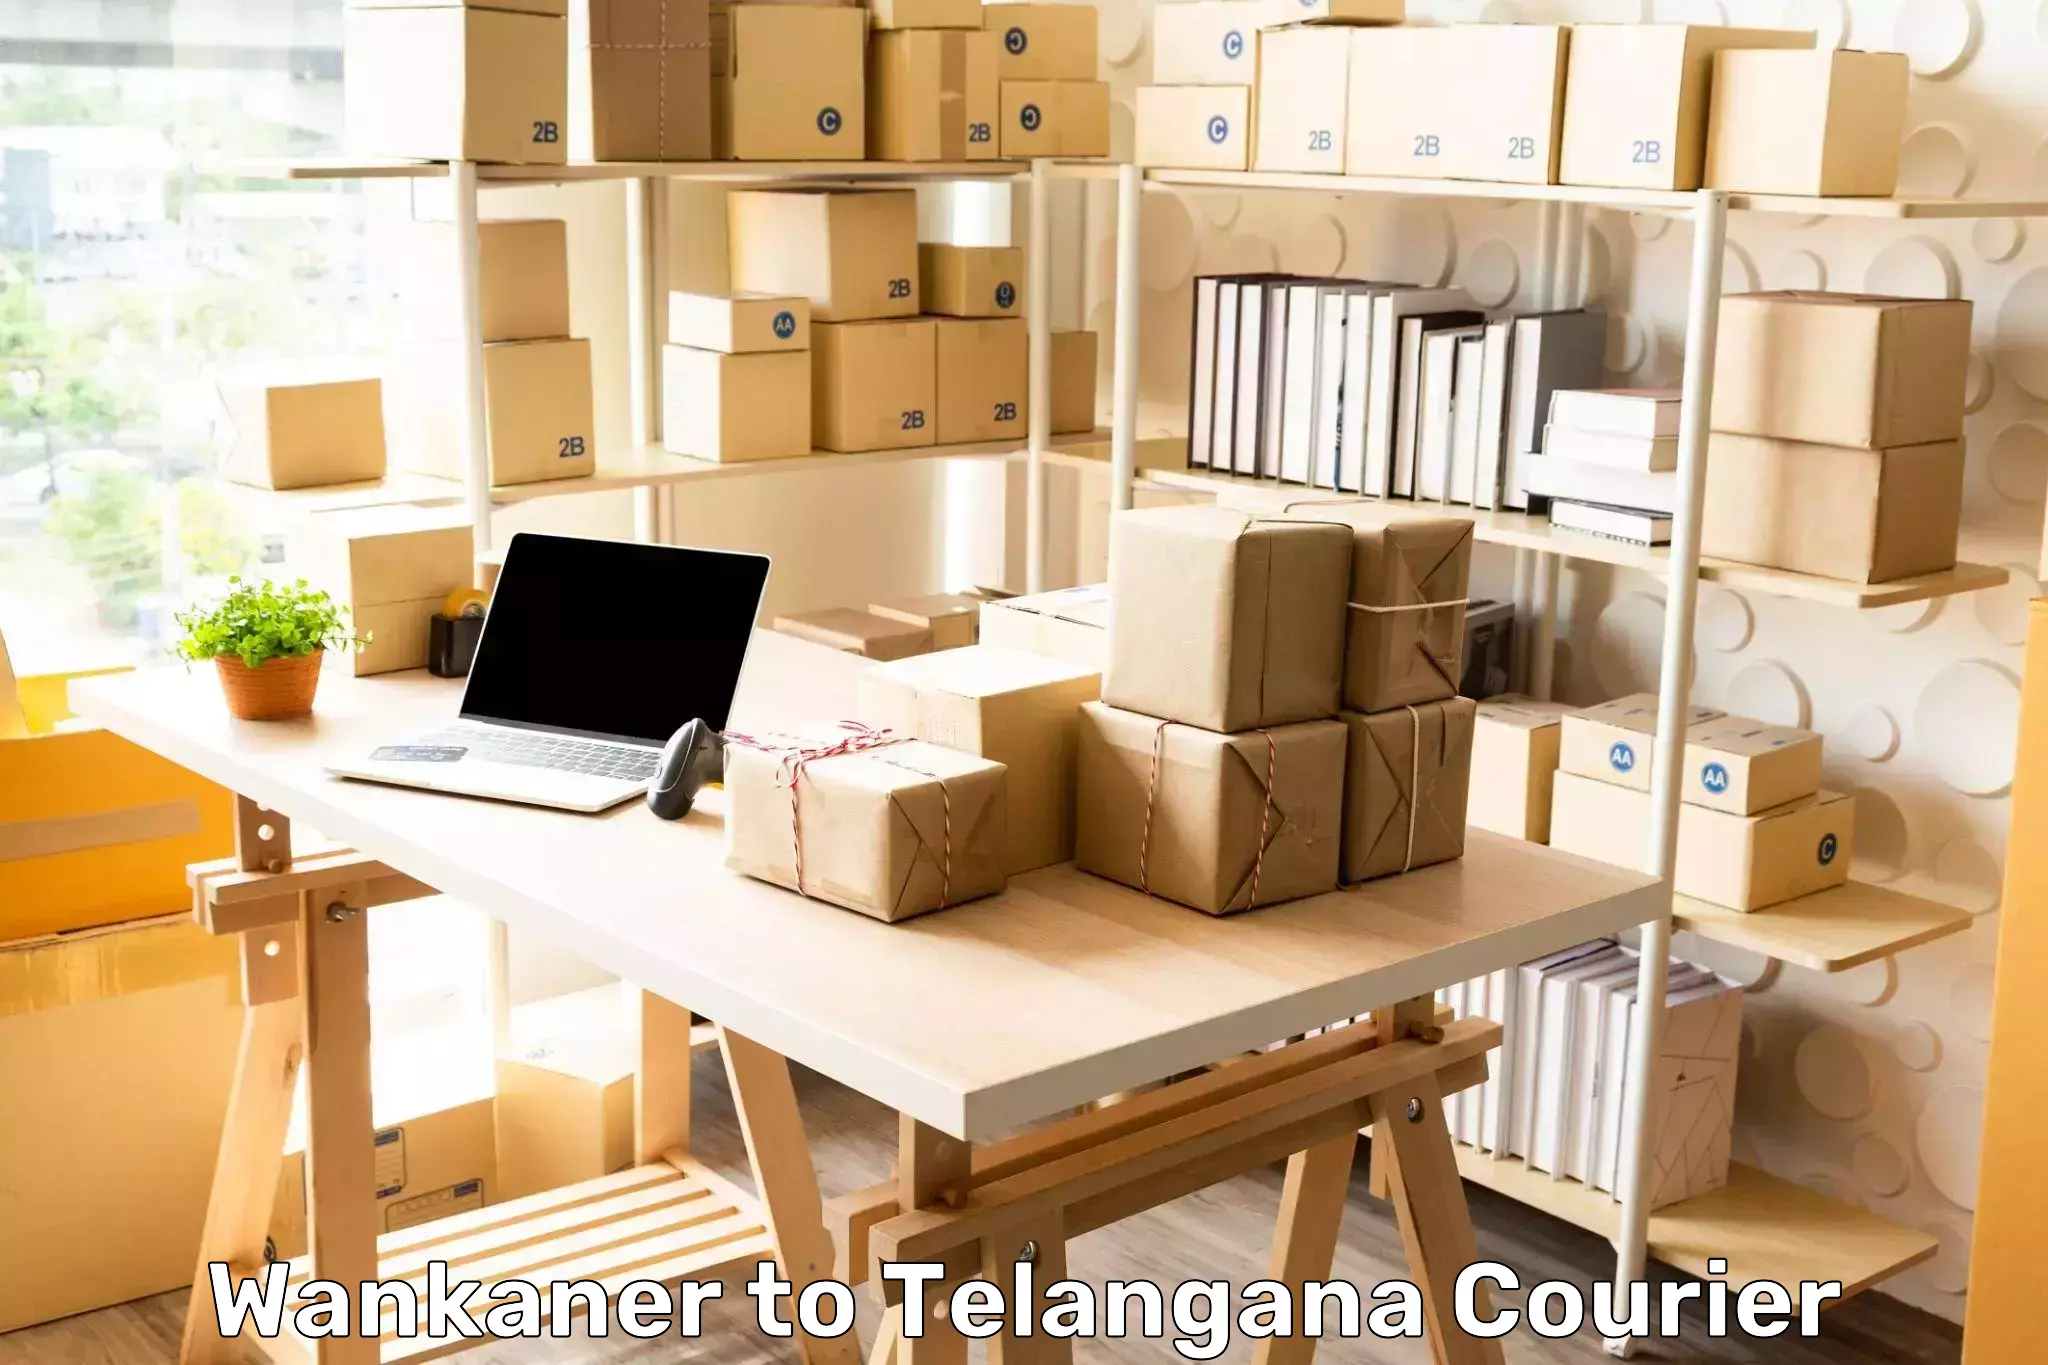 Versatile courier options Wankaner to Babasagar